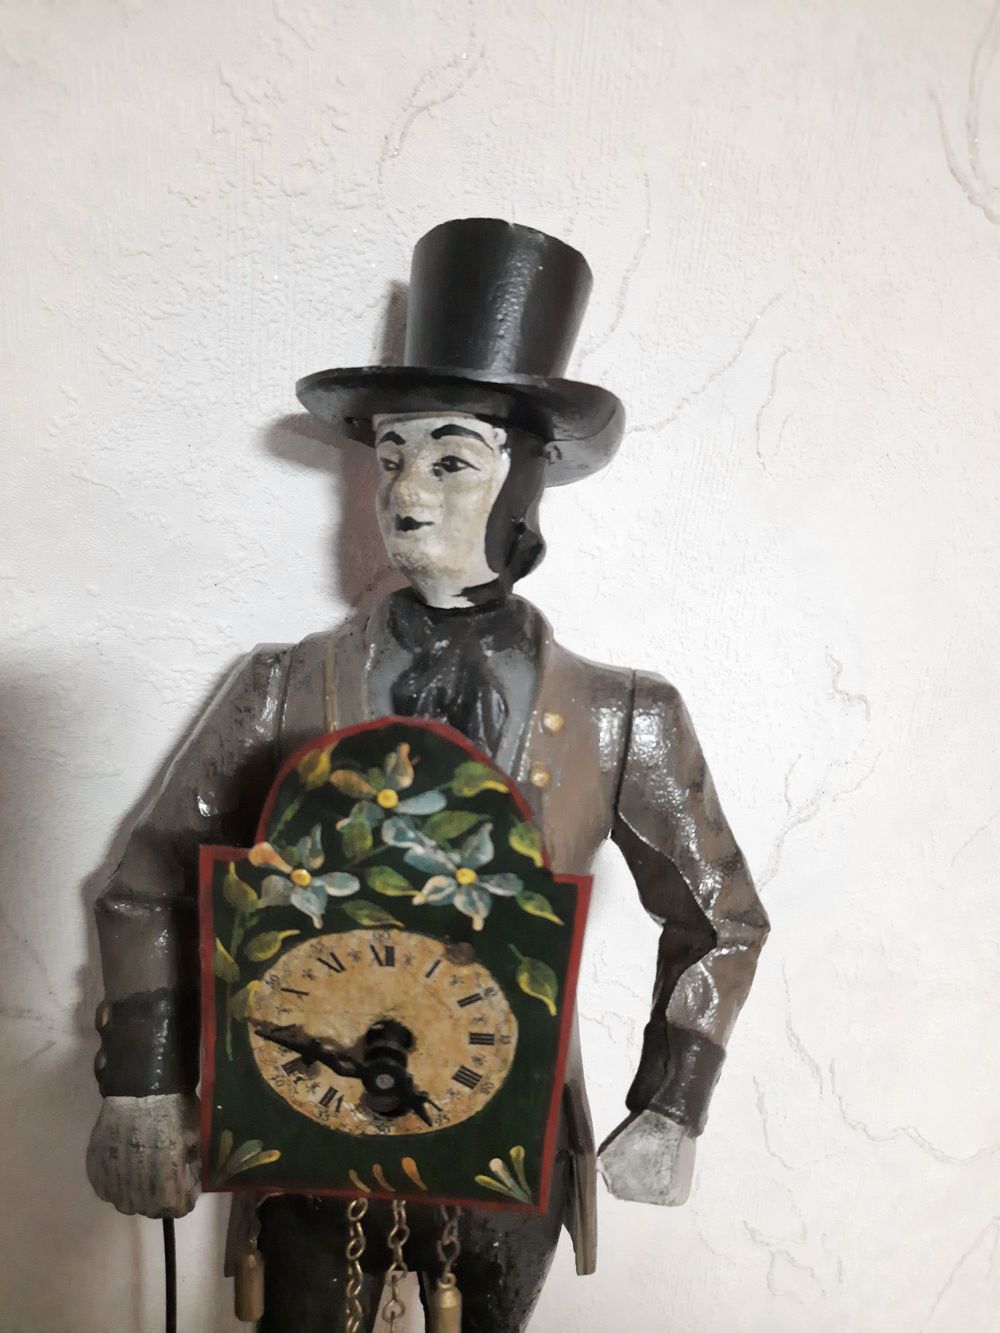 2.Alte Wanduhren,Wecker,Alte Figurenuhr Uhrenträger Uhrenmann 40 cm defekt